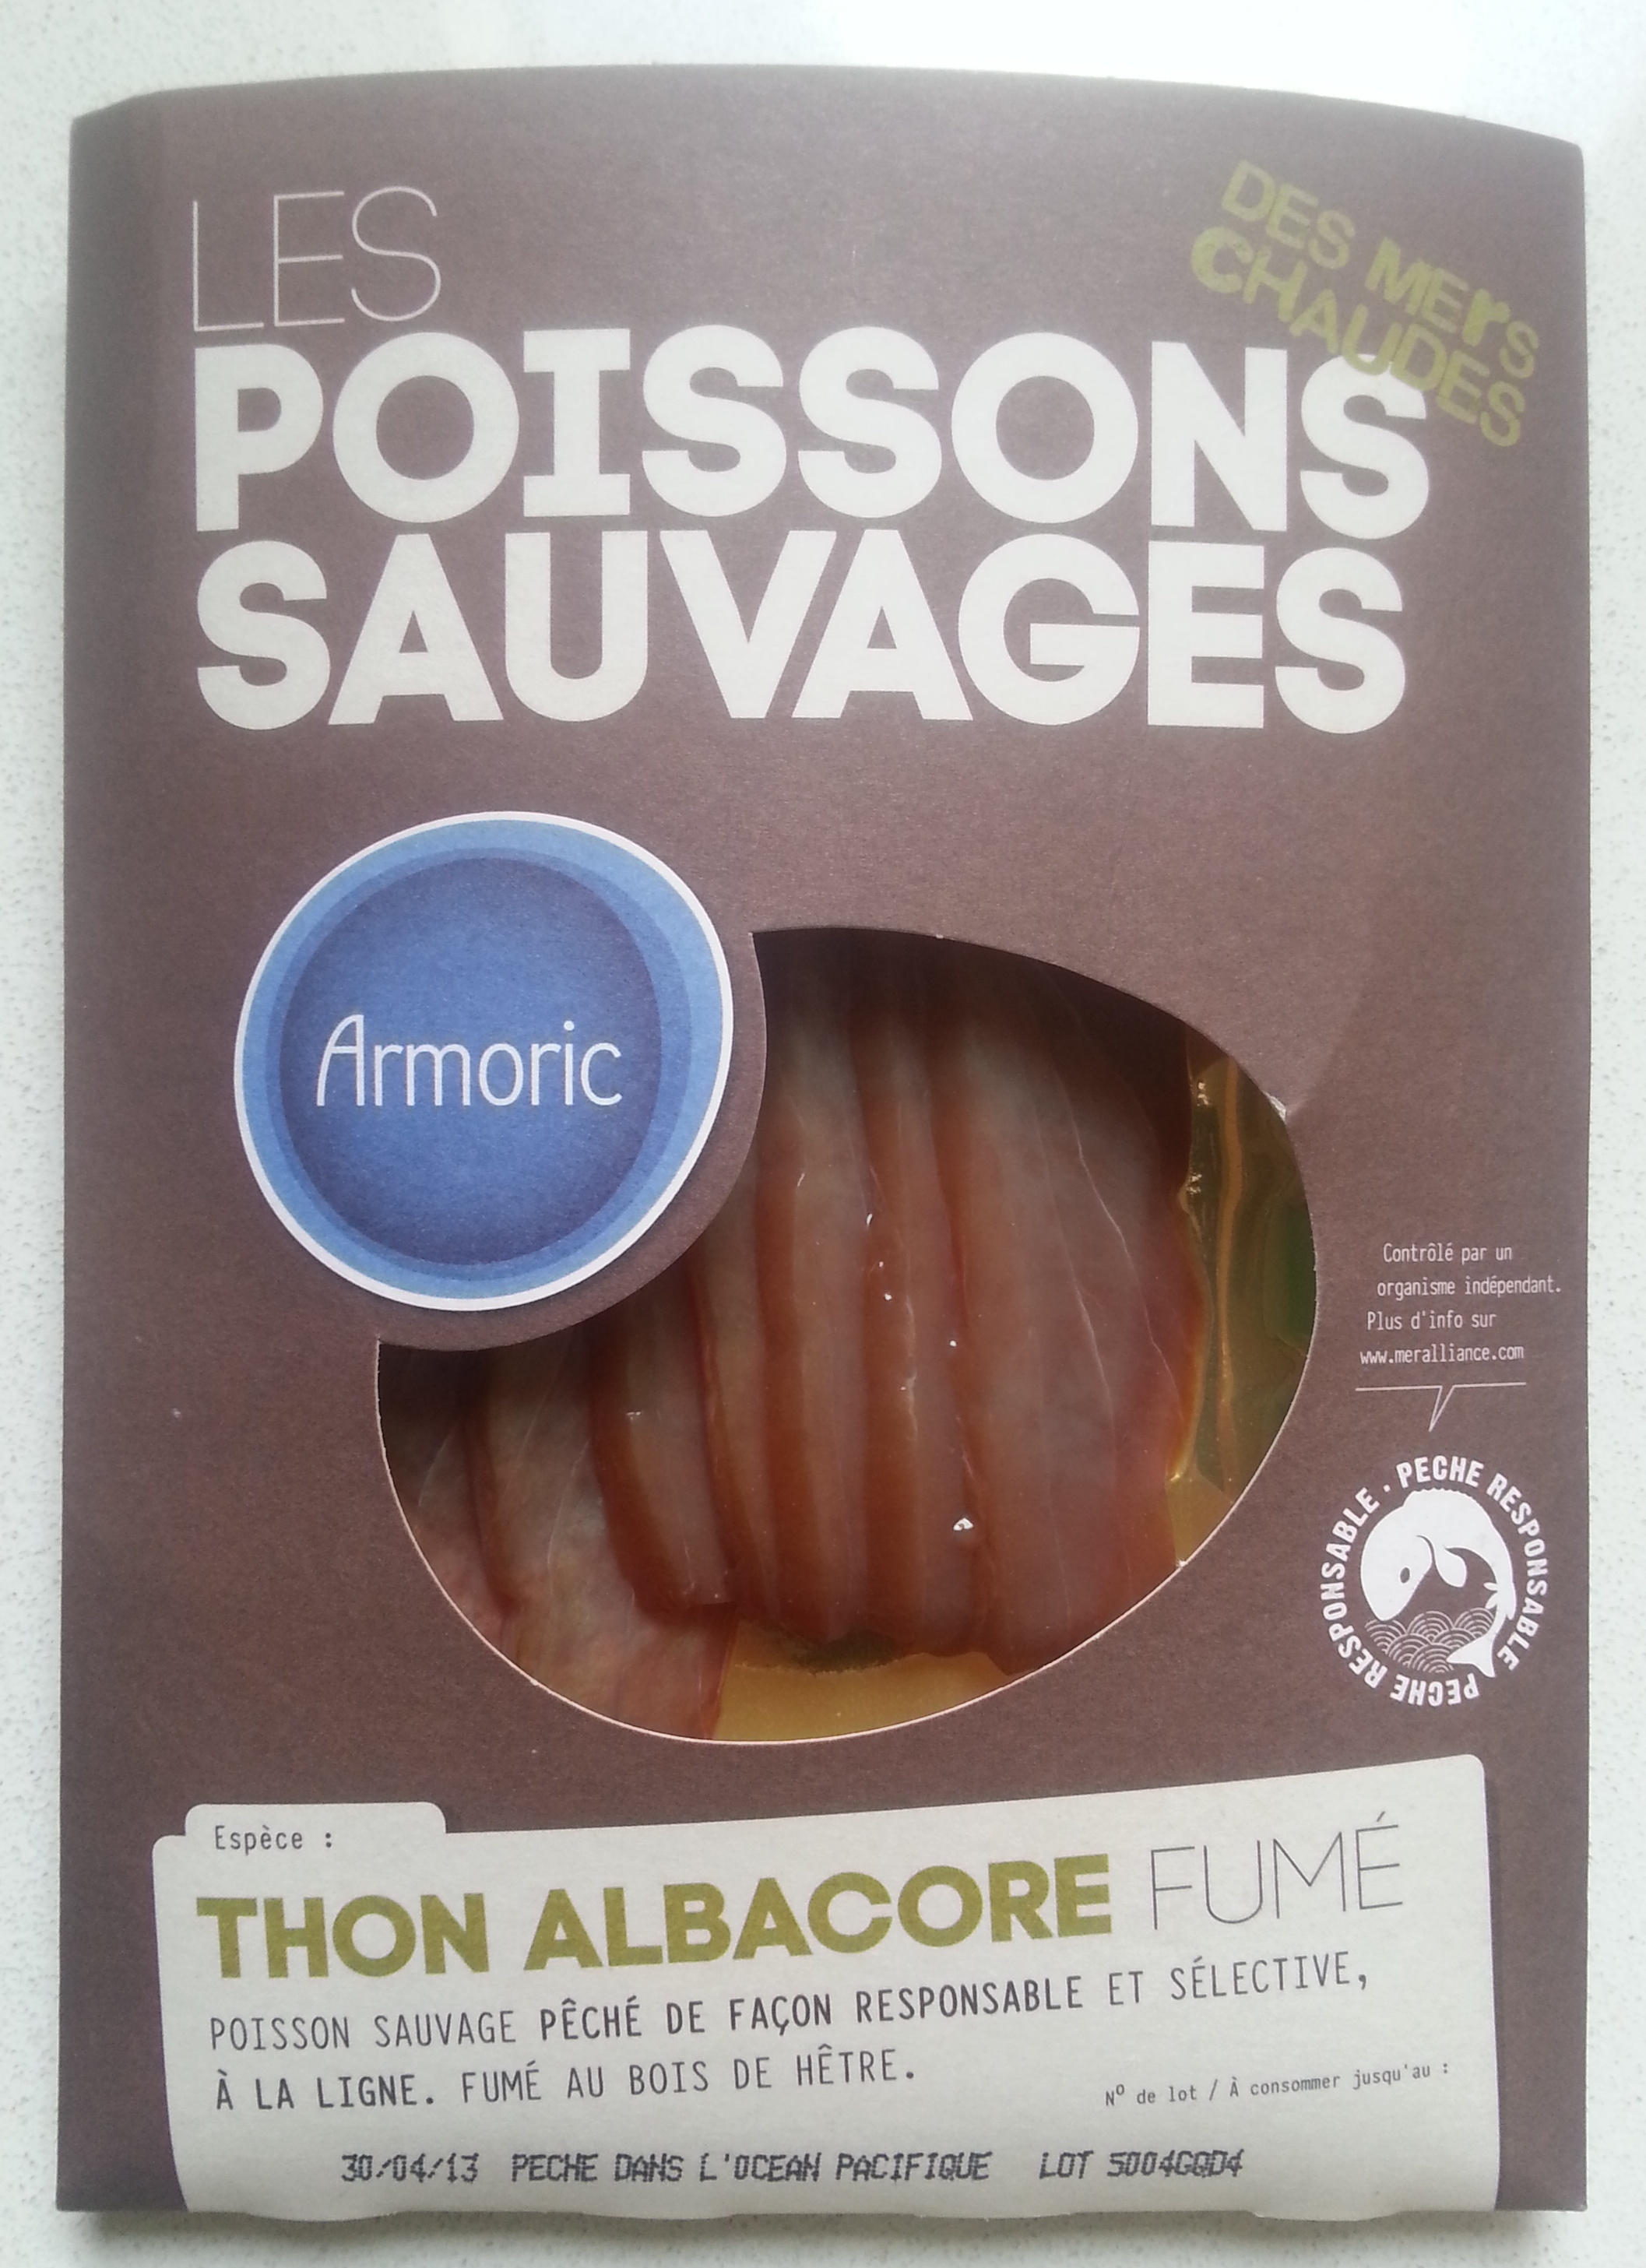 Les poissons sauvages Thon albacore fumé - Product - fr